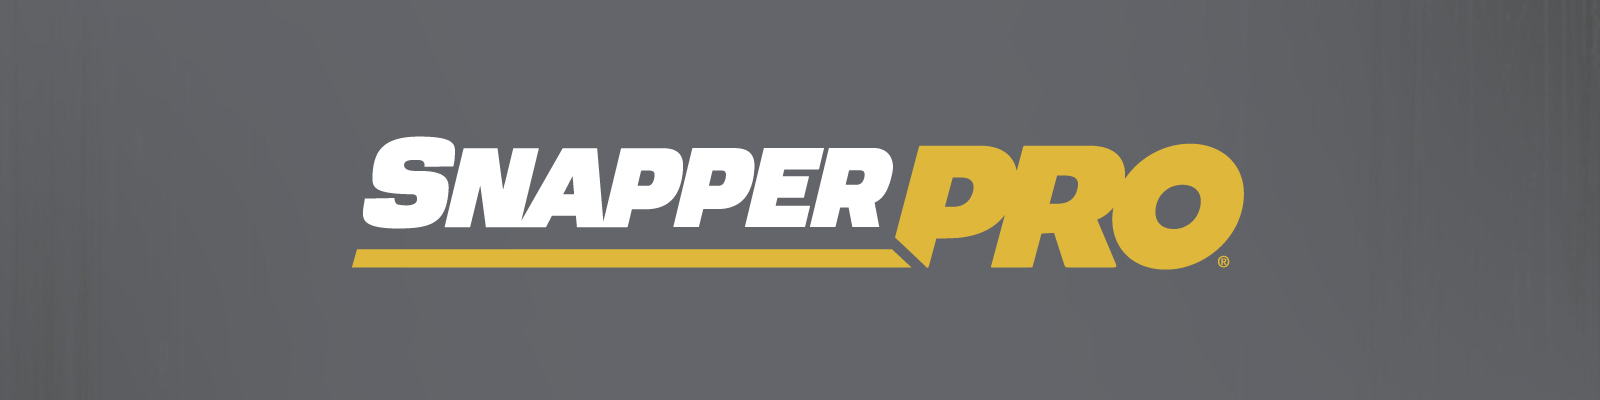 Snapper Pro Advertising Media